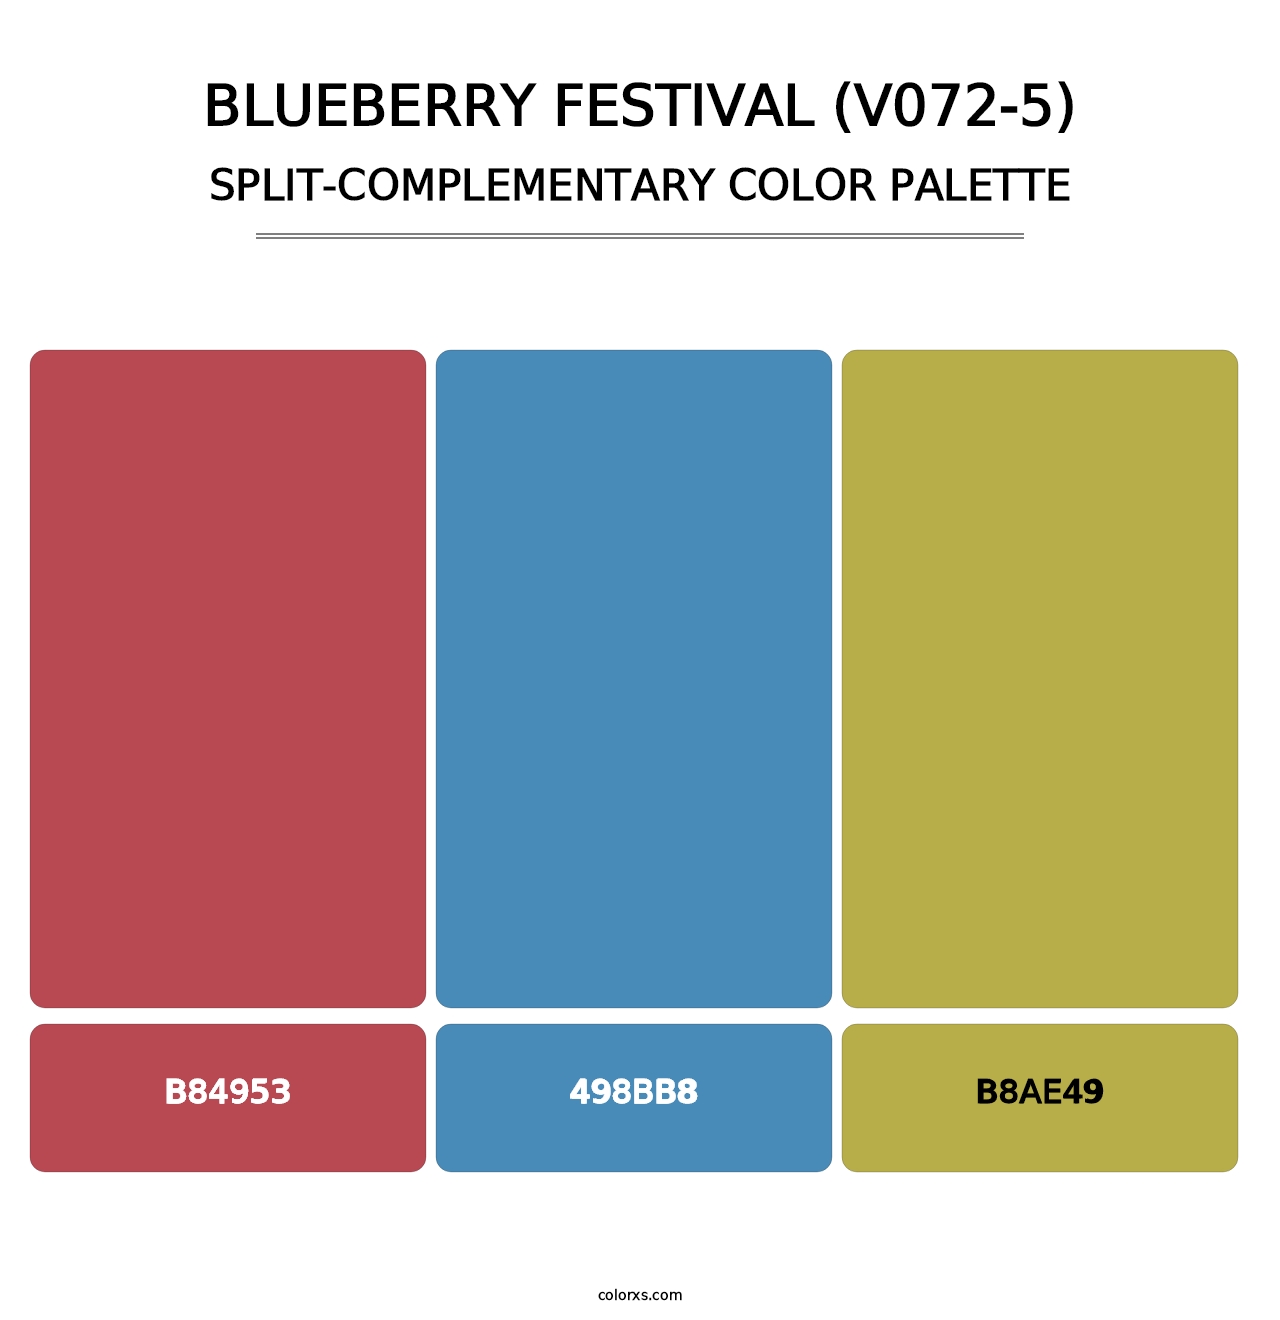 Blueberry Festival (V072-5) - Split-Complementary Color Palette